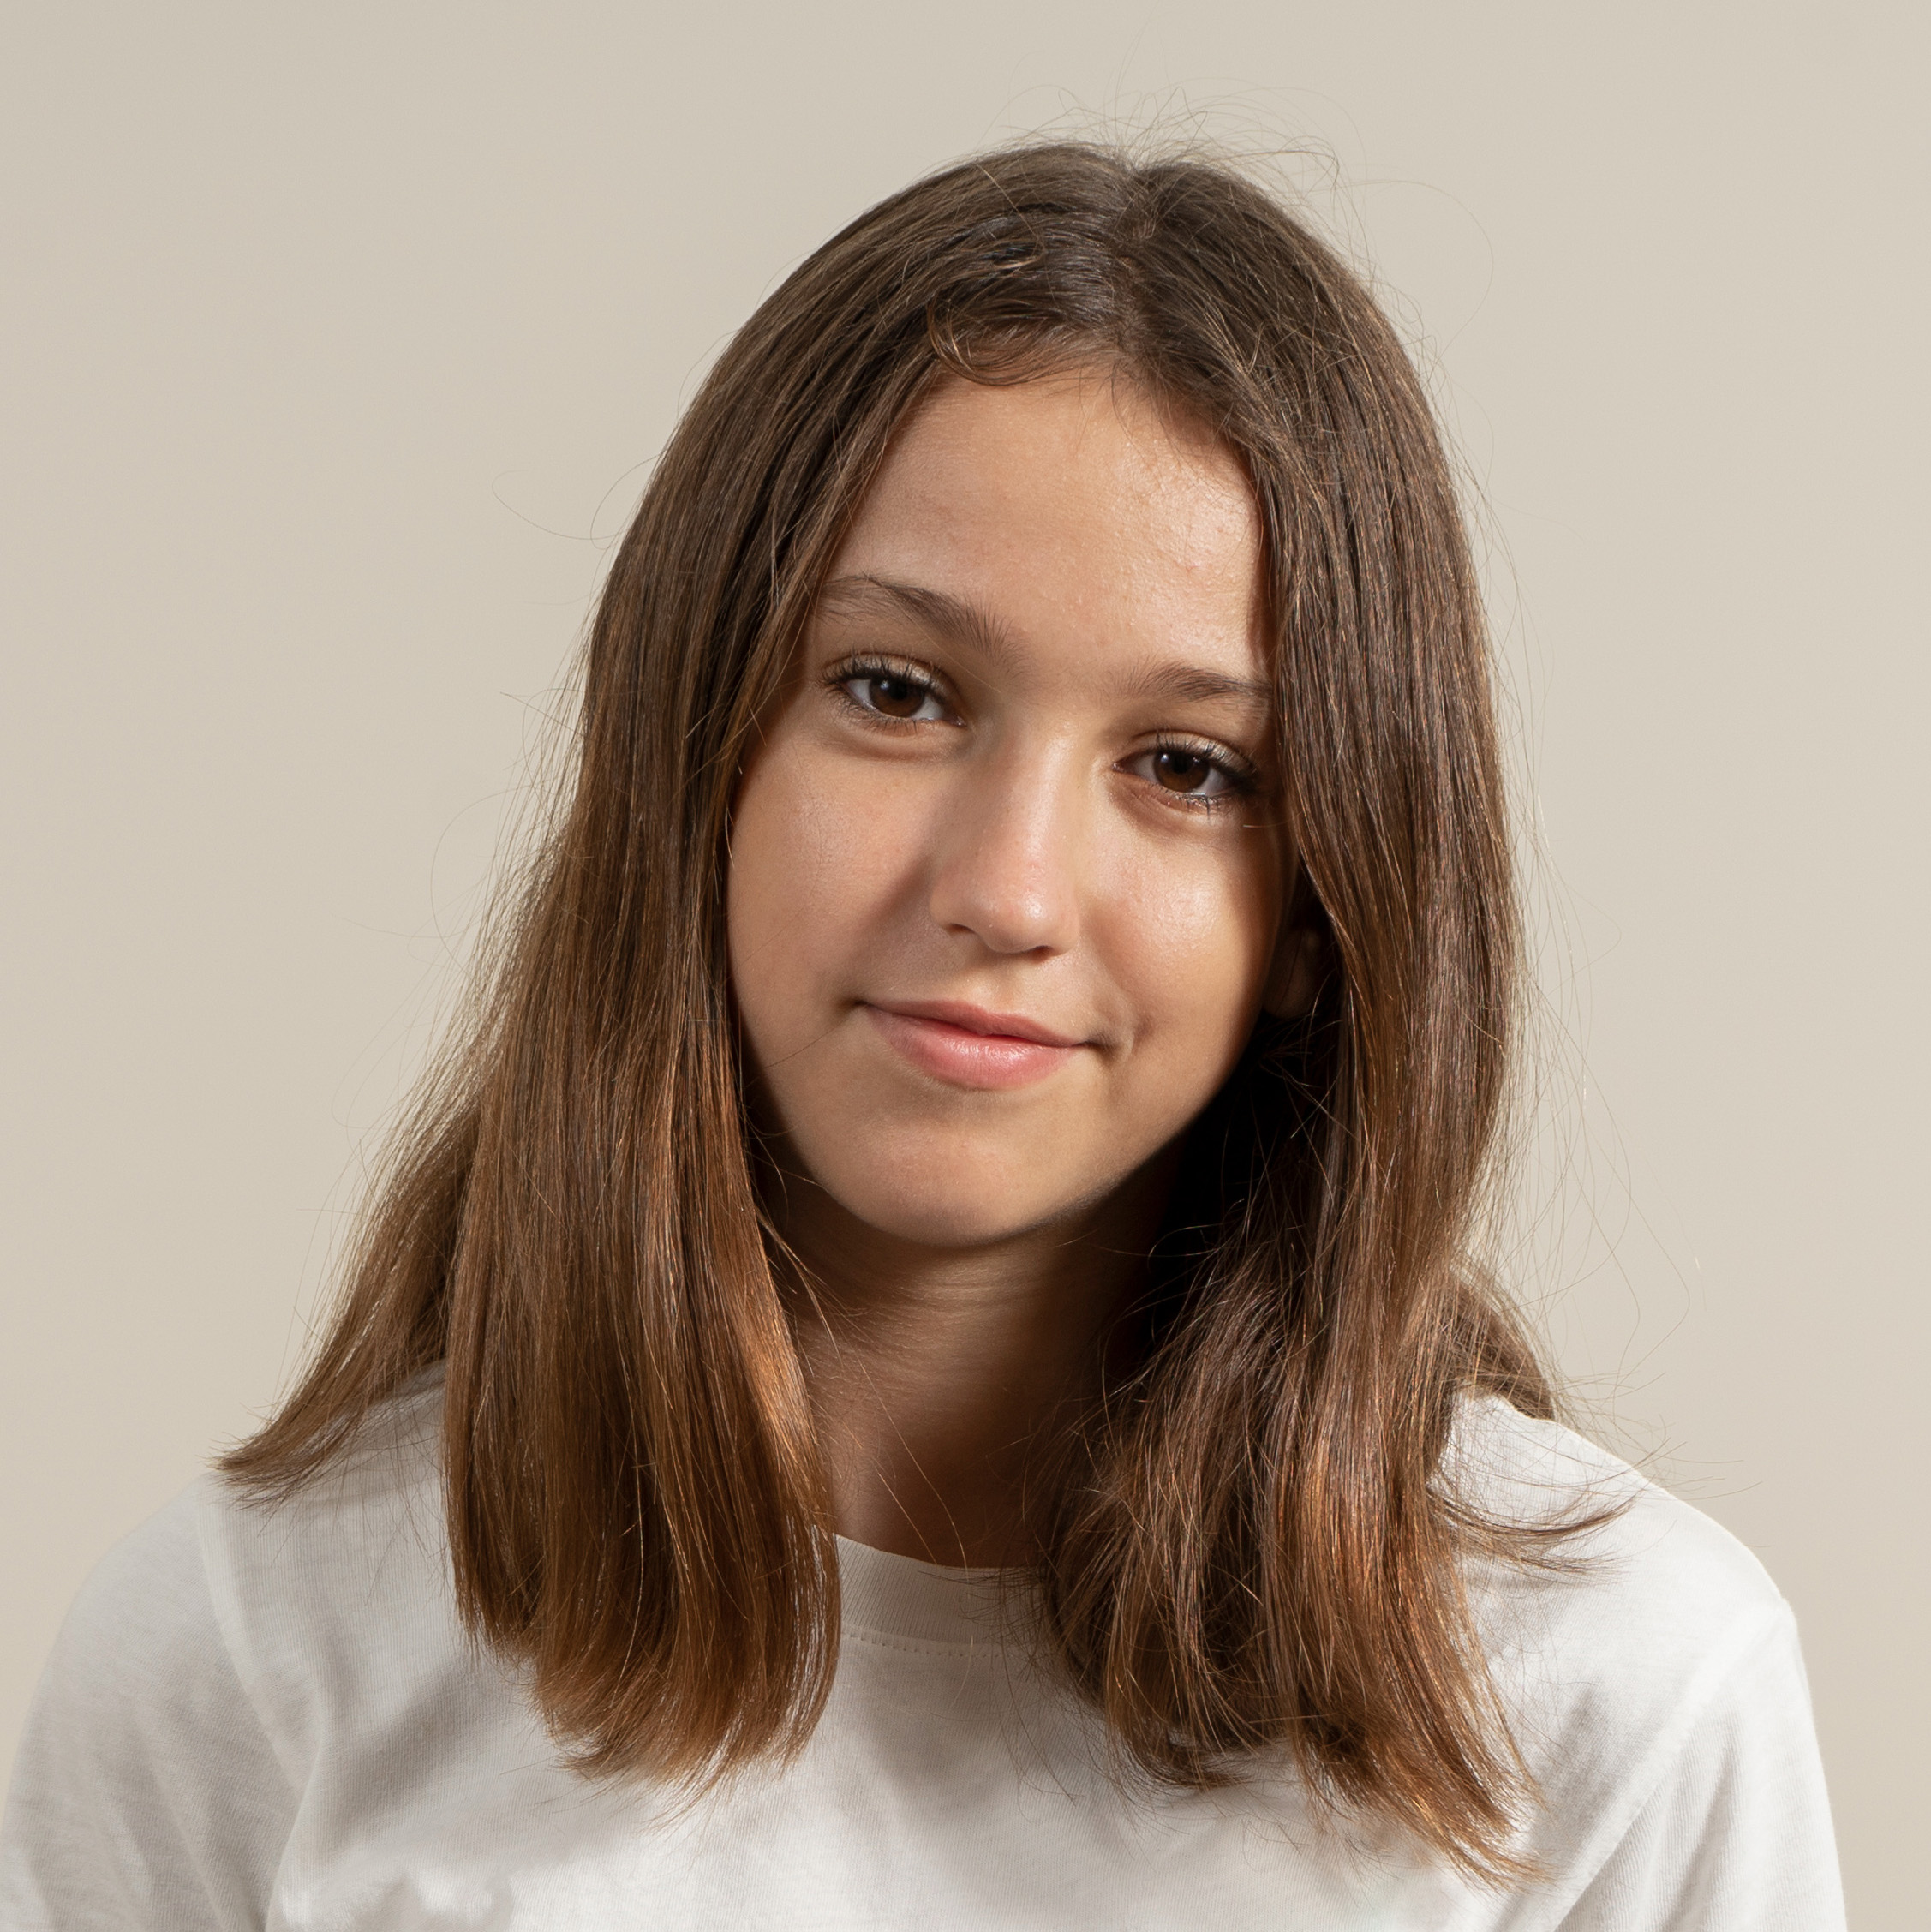 Hannah, Age 15